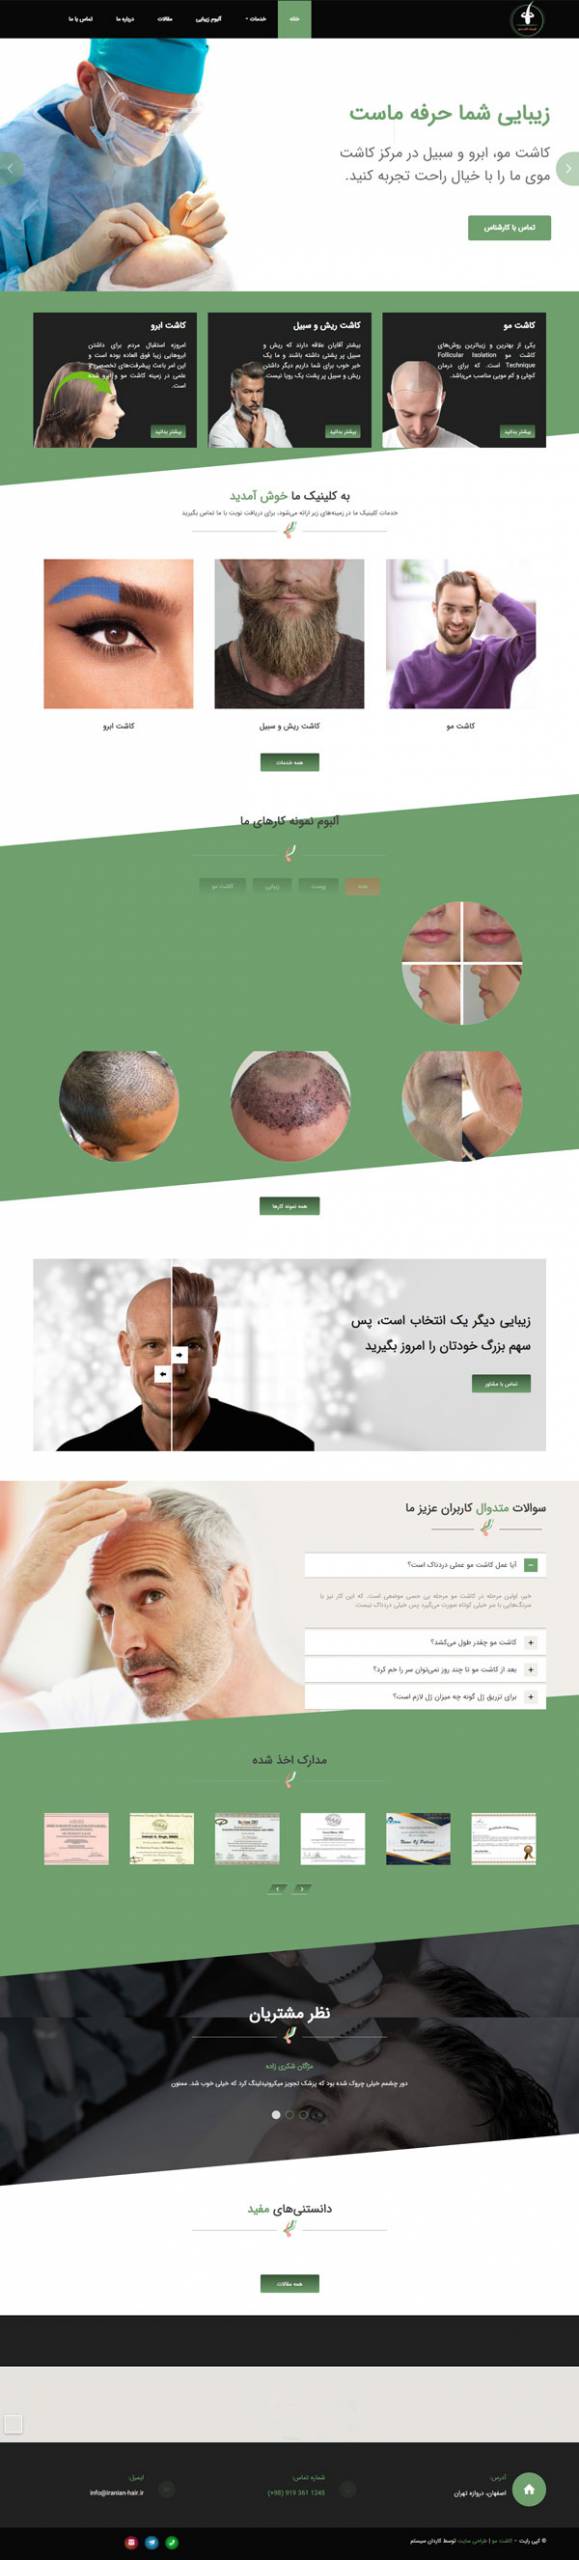 طراحی سایت کلینیک کاشت موی ایرانیان | کلینیک کاشت مو